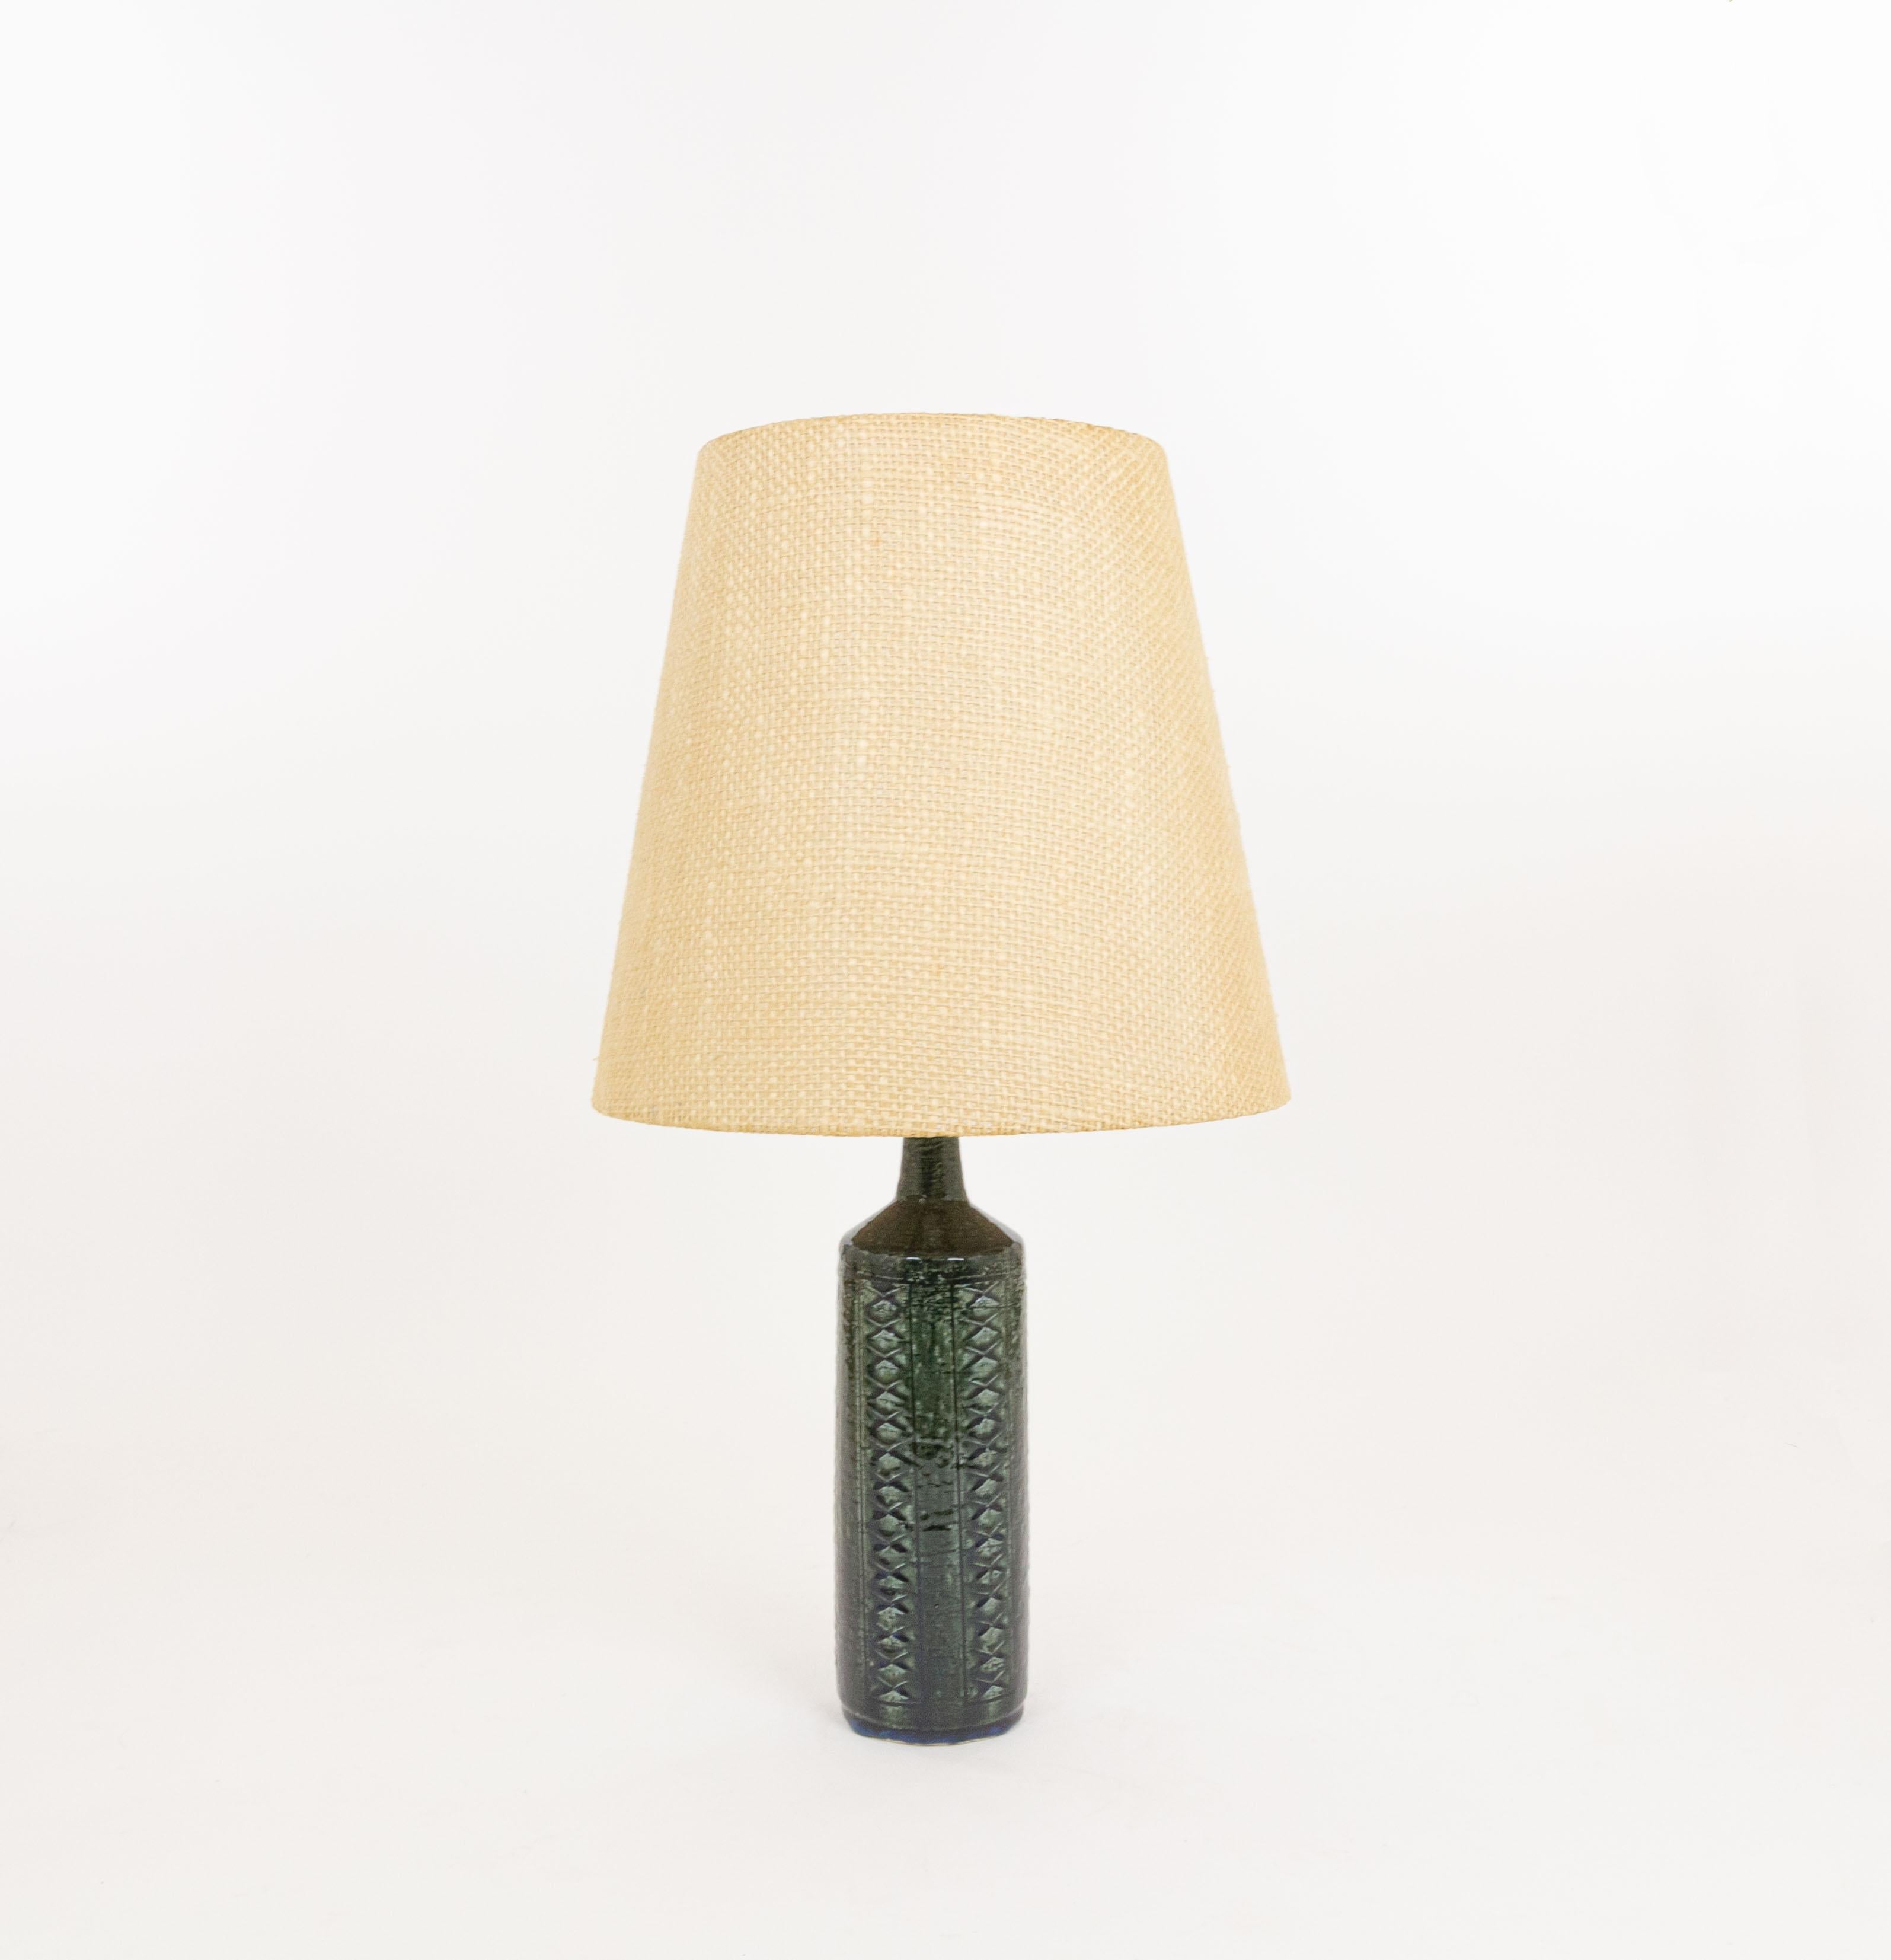 Tischleuchte Modell DL/27, hergestellt von Annelise und Per Linnemann-Schmidt für Palshus in den 1960er Jahren. Die Farbe des handgefertigten dekorierten Sockels ist Grün-Blau. Es hat beeindruckende Muster.

Die Lampe wird mit der originalen